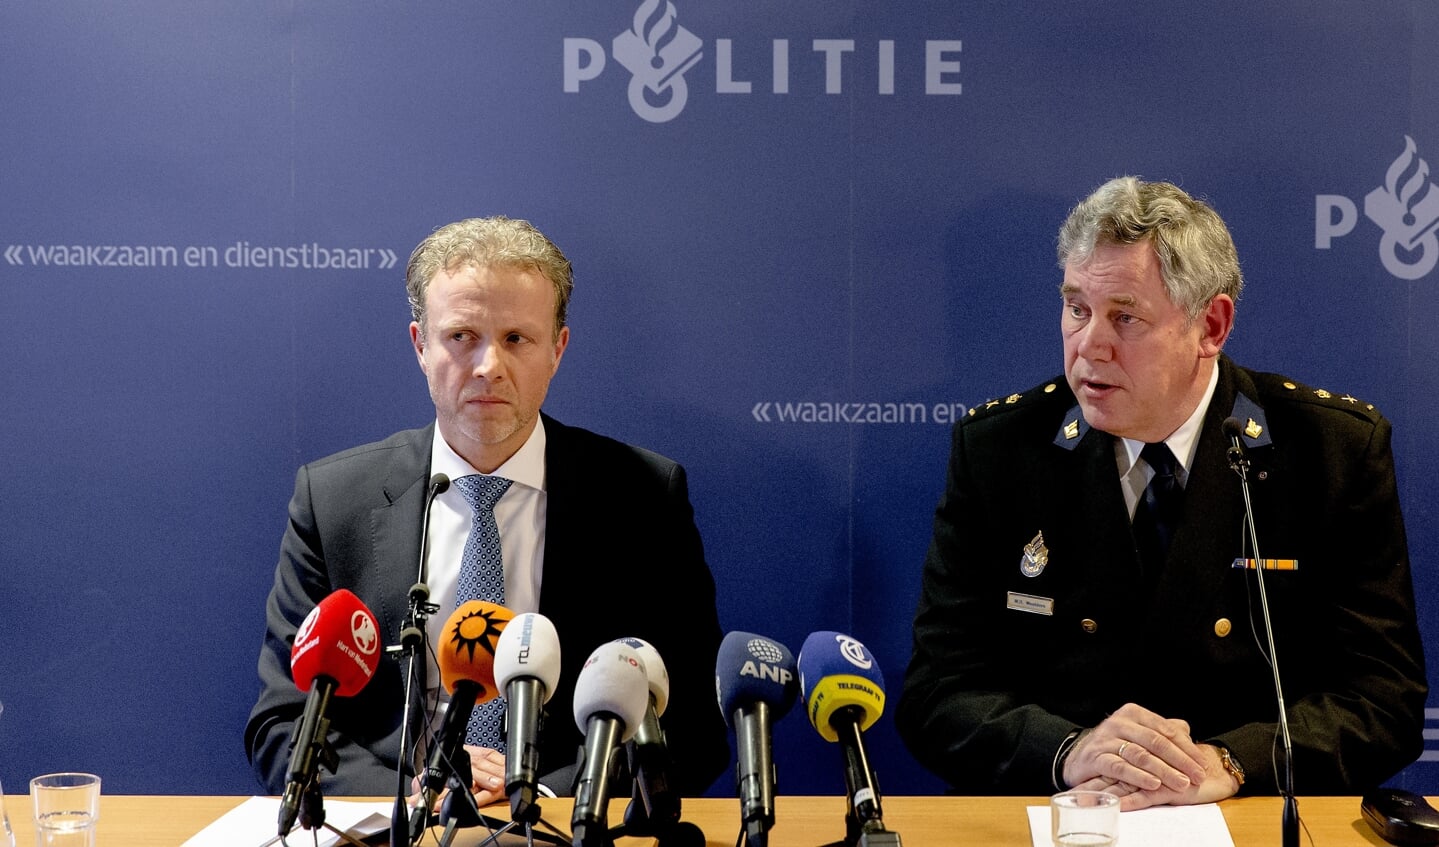 Politiechef Willem Woelders: Wij willen niet tegenover de boeren komen te staan, maar we zullen ze wel begrenzen waar ze de grens over gaan.'